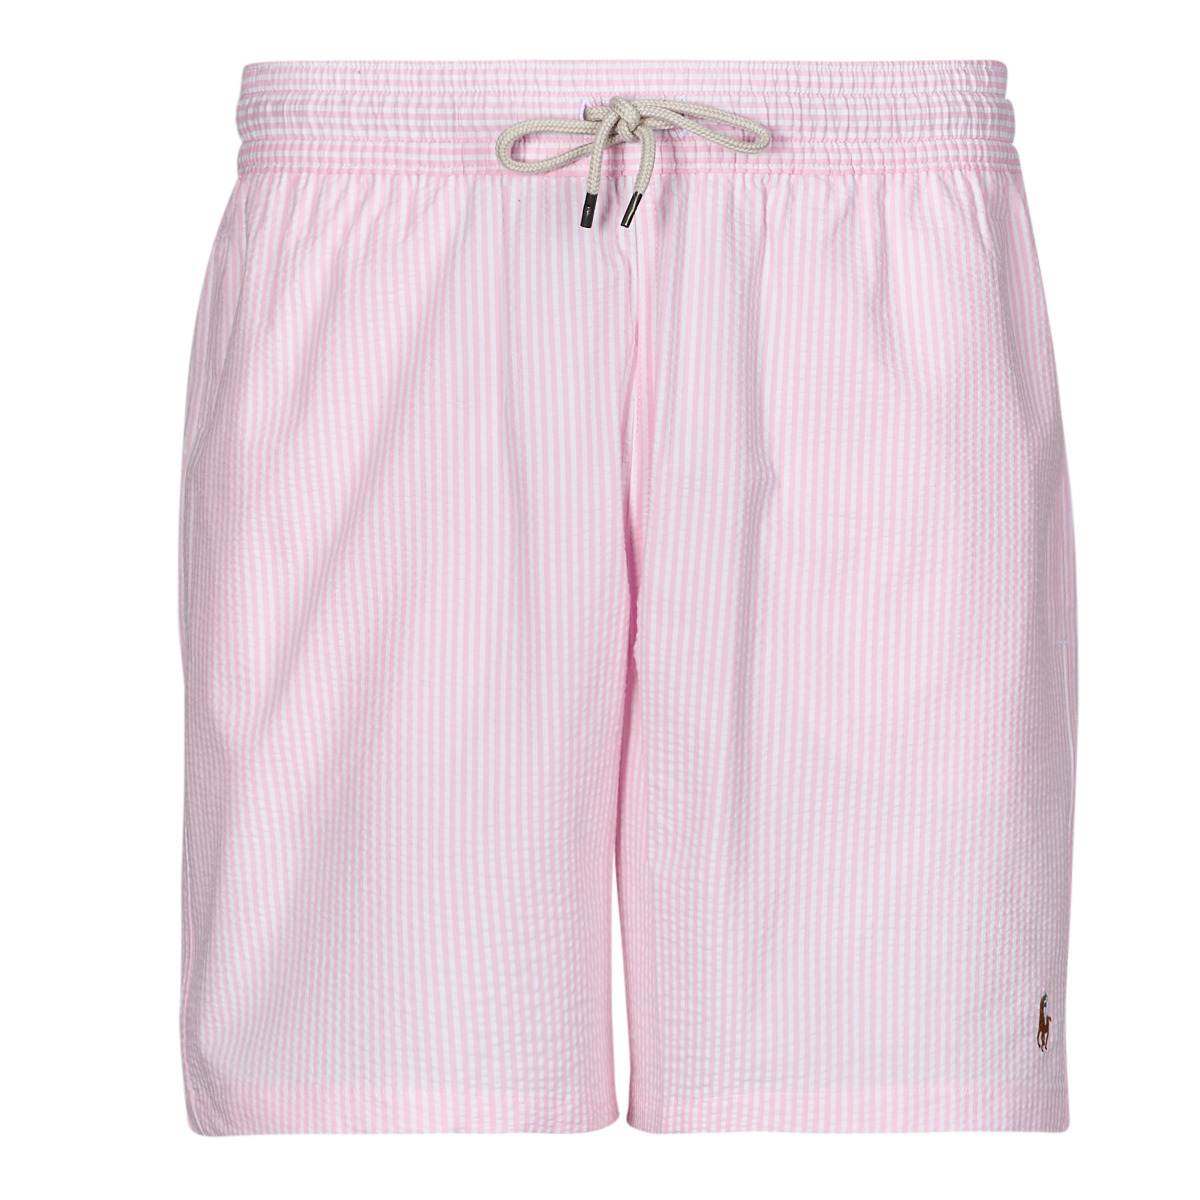 tekstylia Męskie Kostiumy / Szorty kąpielowe Polo Ralph Lauren MAILLOT DE BAIN A RAYURES EN COTON MELANGE Różowy / Biały / Carmel / Pink